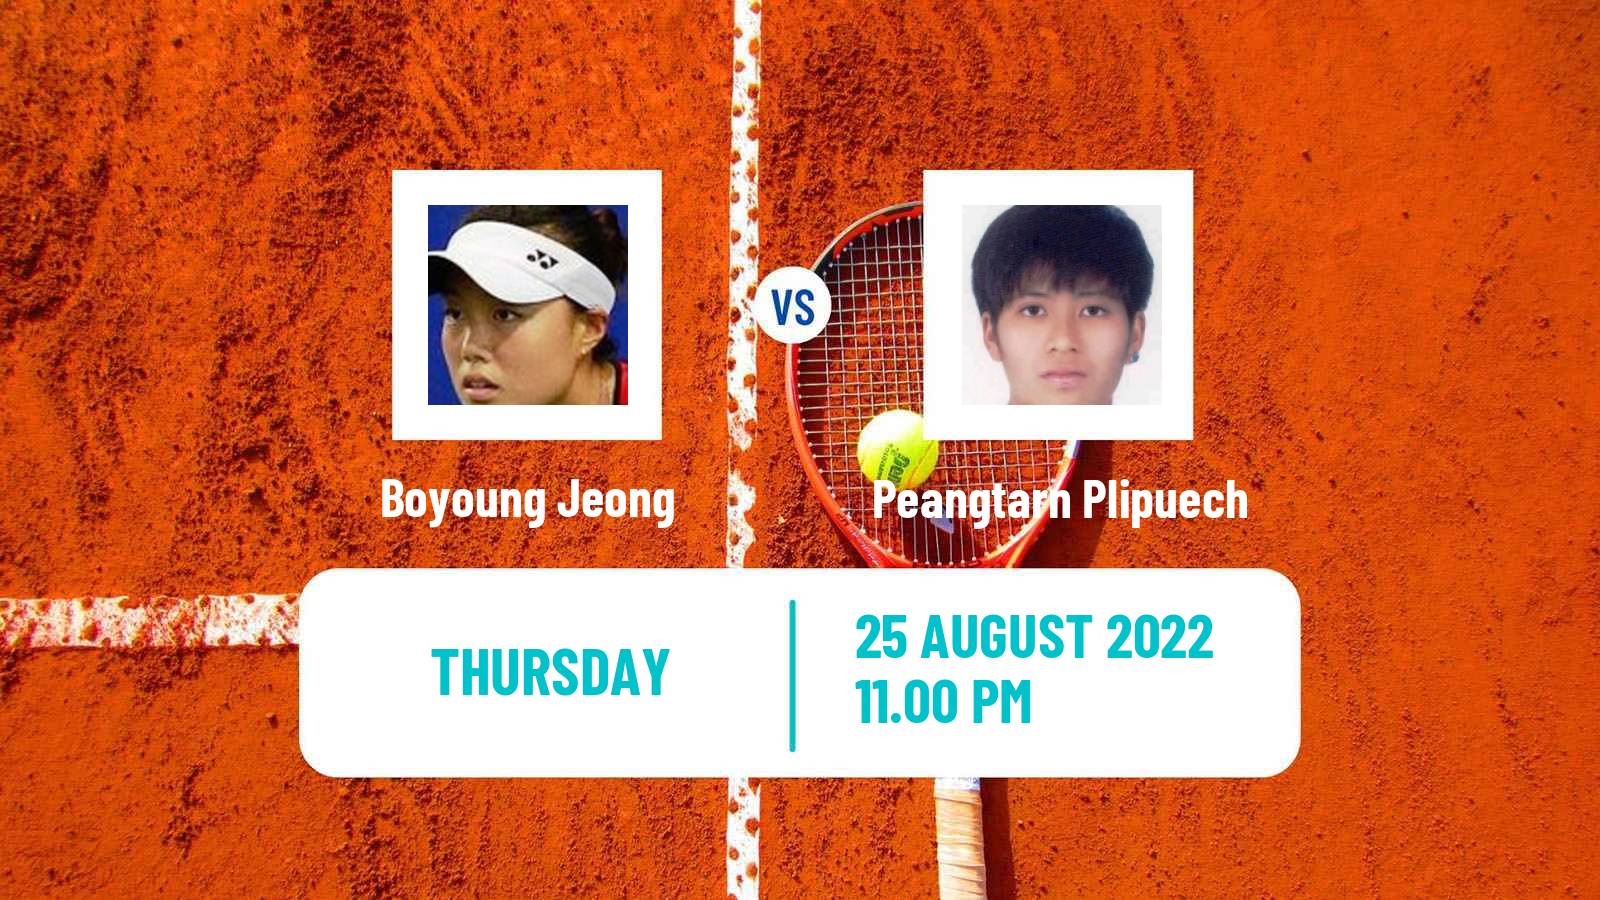 Tennis ITF Tournaments Boyoung Jeong - Peangtarn Plipuech